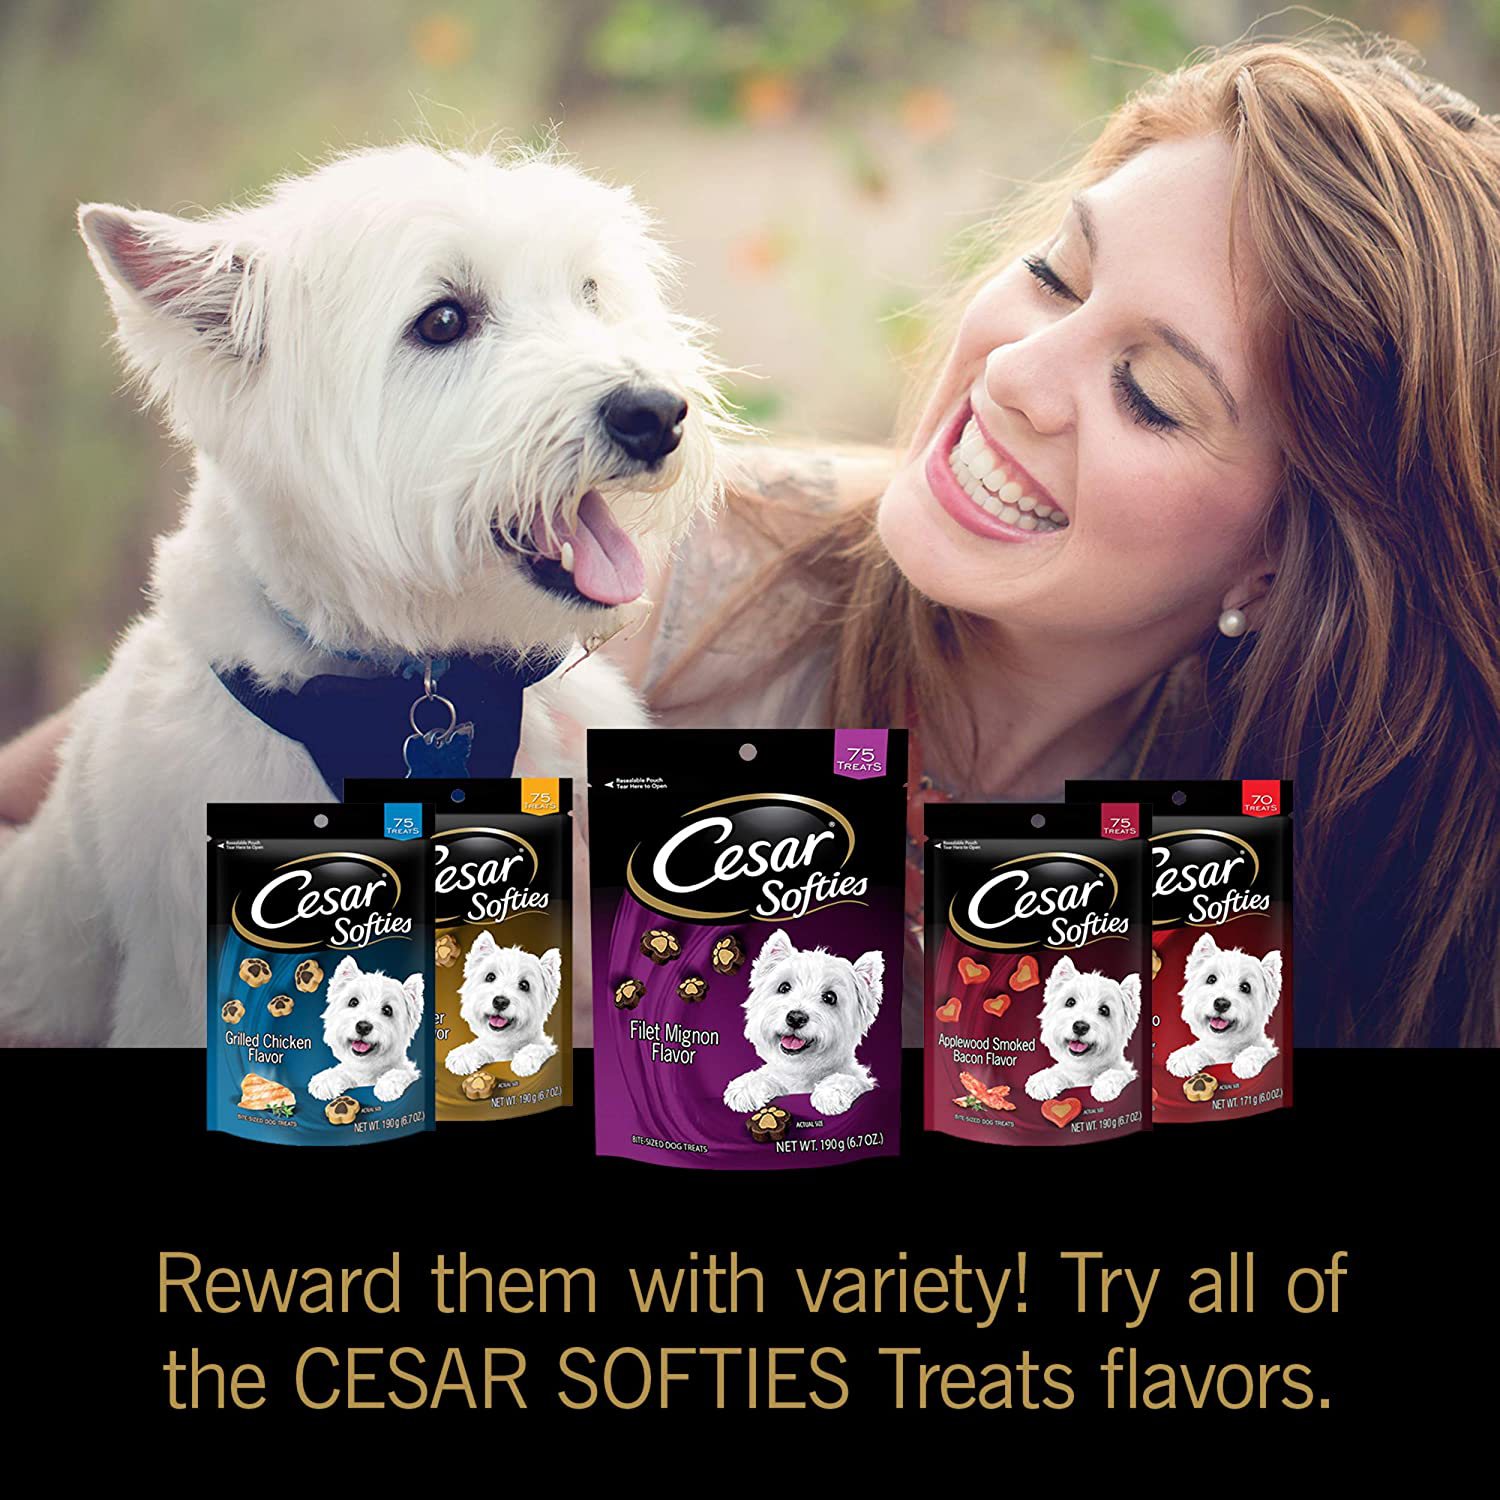 Cesar Softies Dog Treats Animals & Pet Supplies > Pet Supplies > Dog Supplies > Dog Treats Cesar   